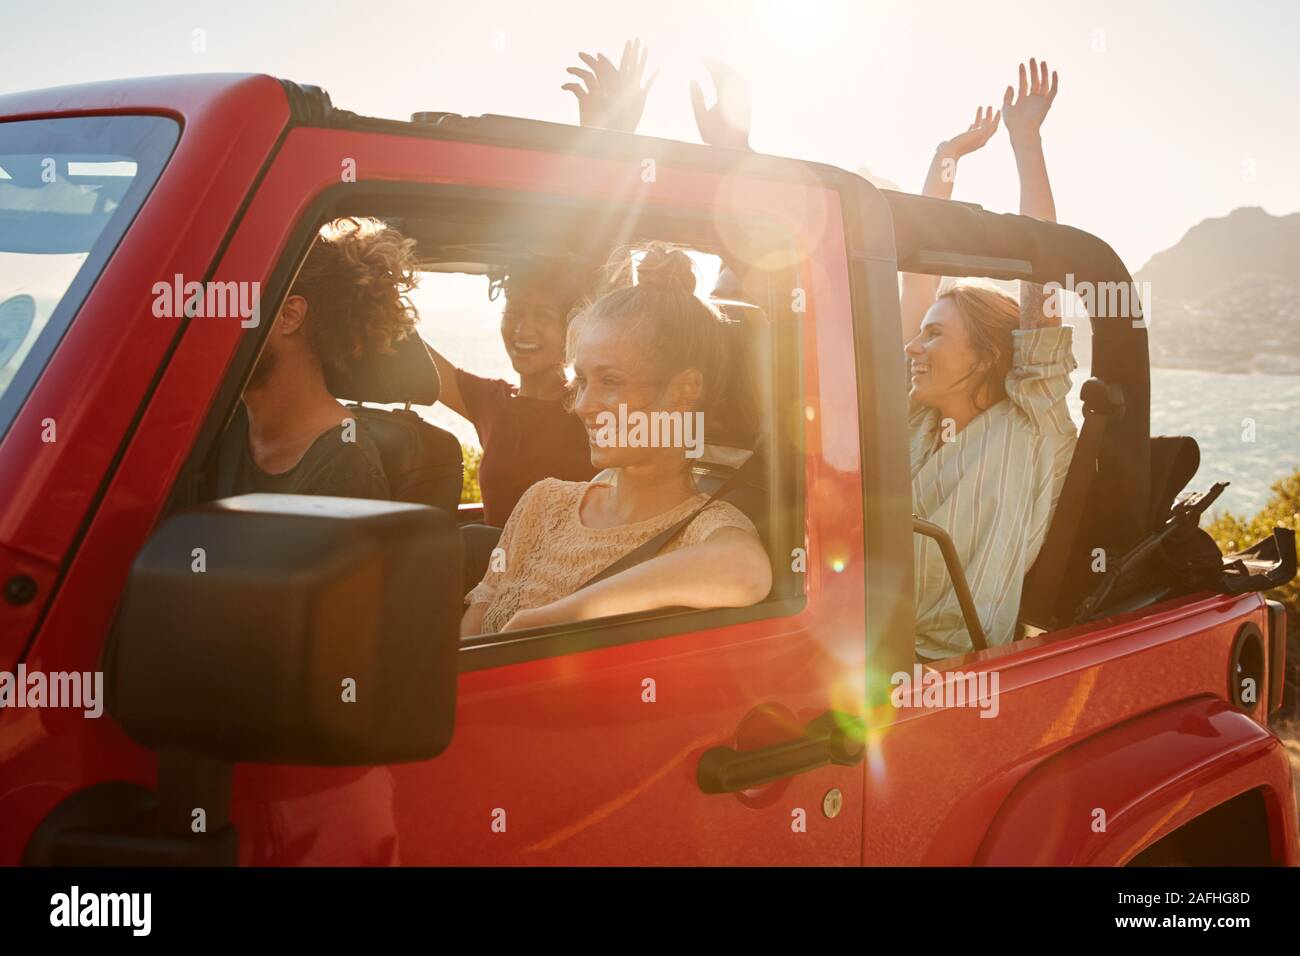 Les jeunes excités amis adultes sur un road trip locations roulait dans une voiture à toit ouvert, lens flare Banque D'Images